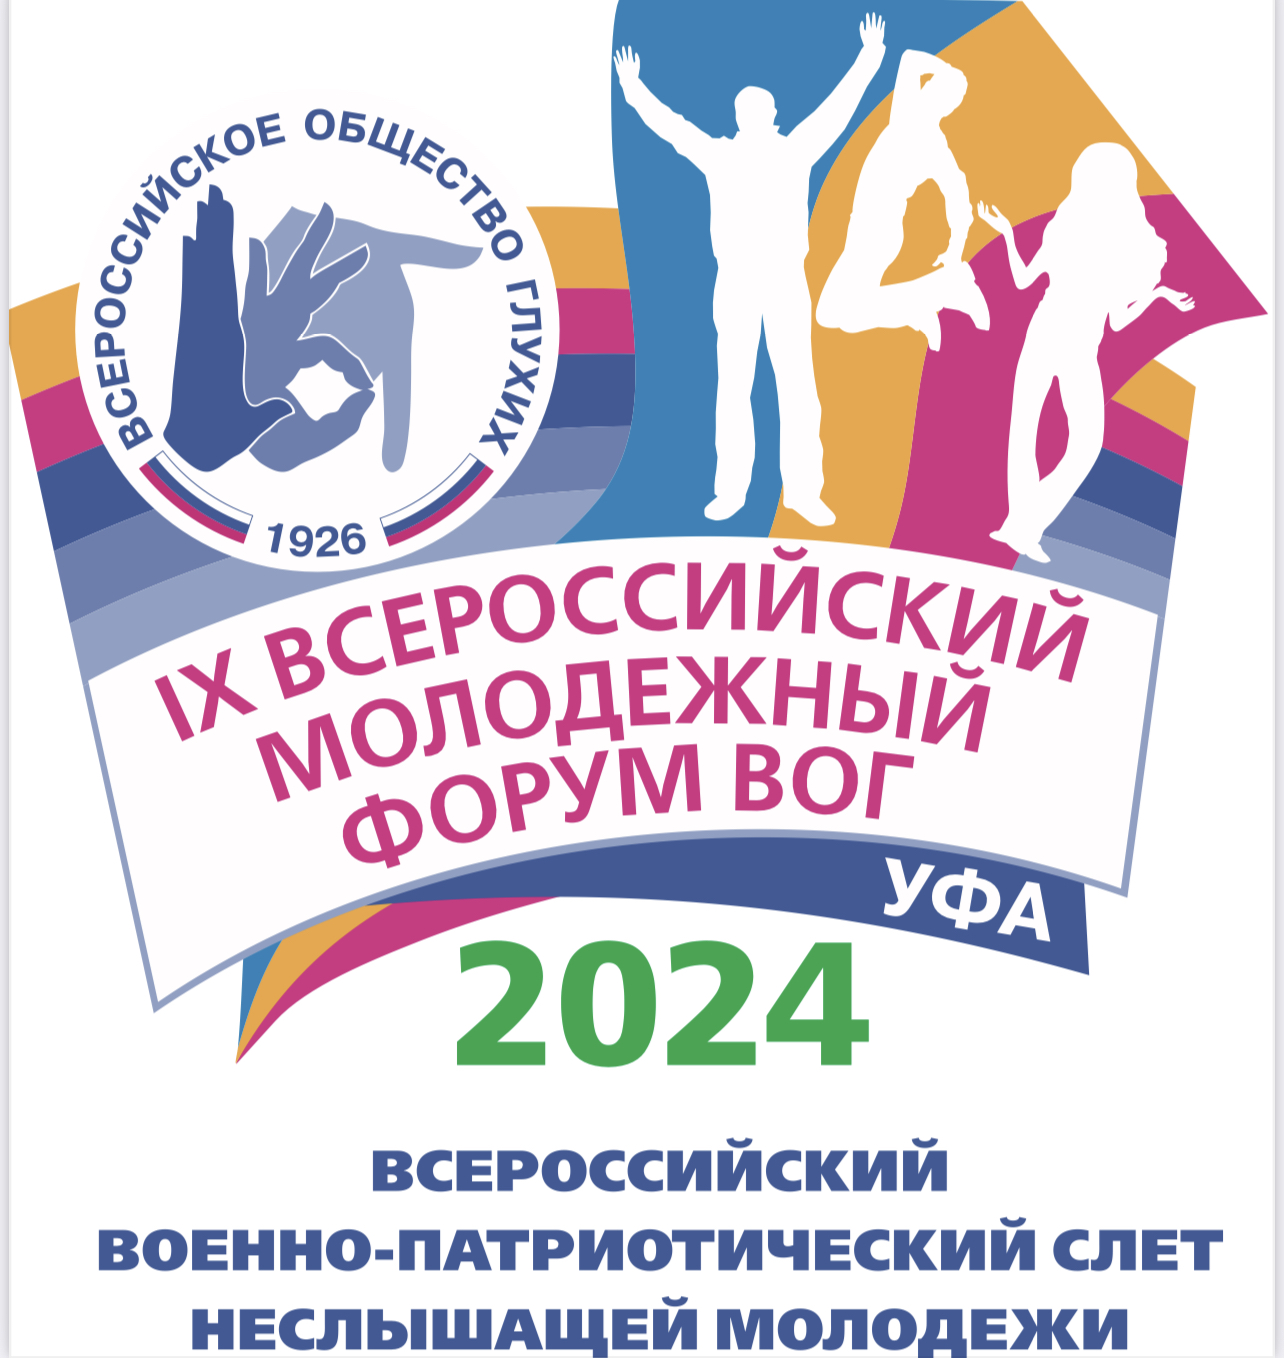 Уже сегодня вечером в парк Патриот начинают стягиваться основные силы IX Всероссийского молодёжного форума ВОГ.